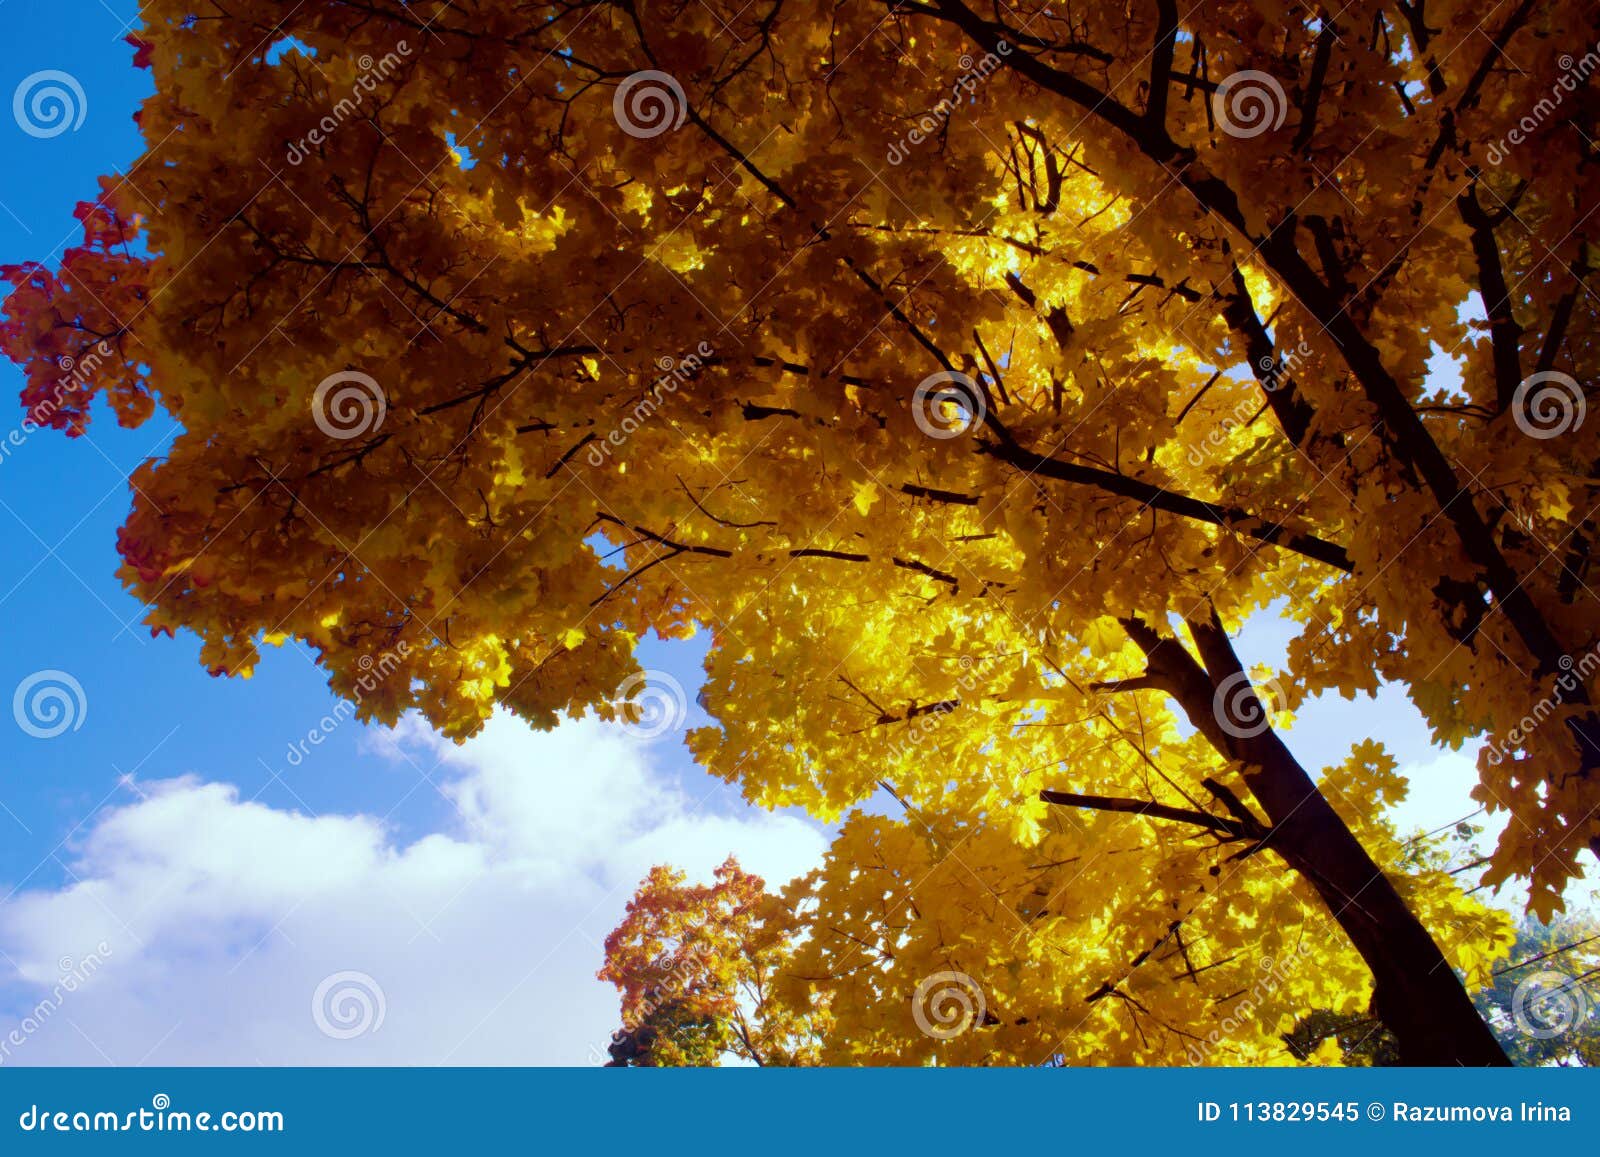 Onder het weelderige gebladerte van de herfstesdoorn. Esdoorn met gele en rode bladeren op blauwe hemelachtergrond